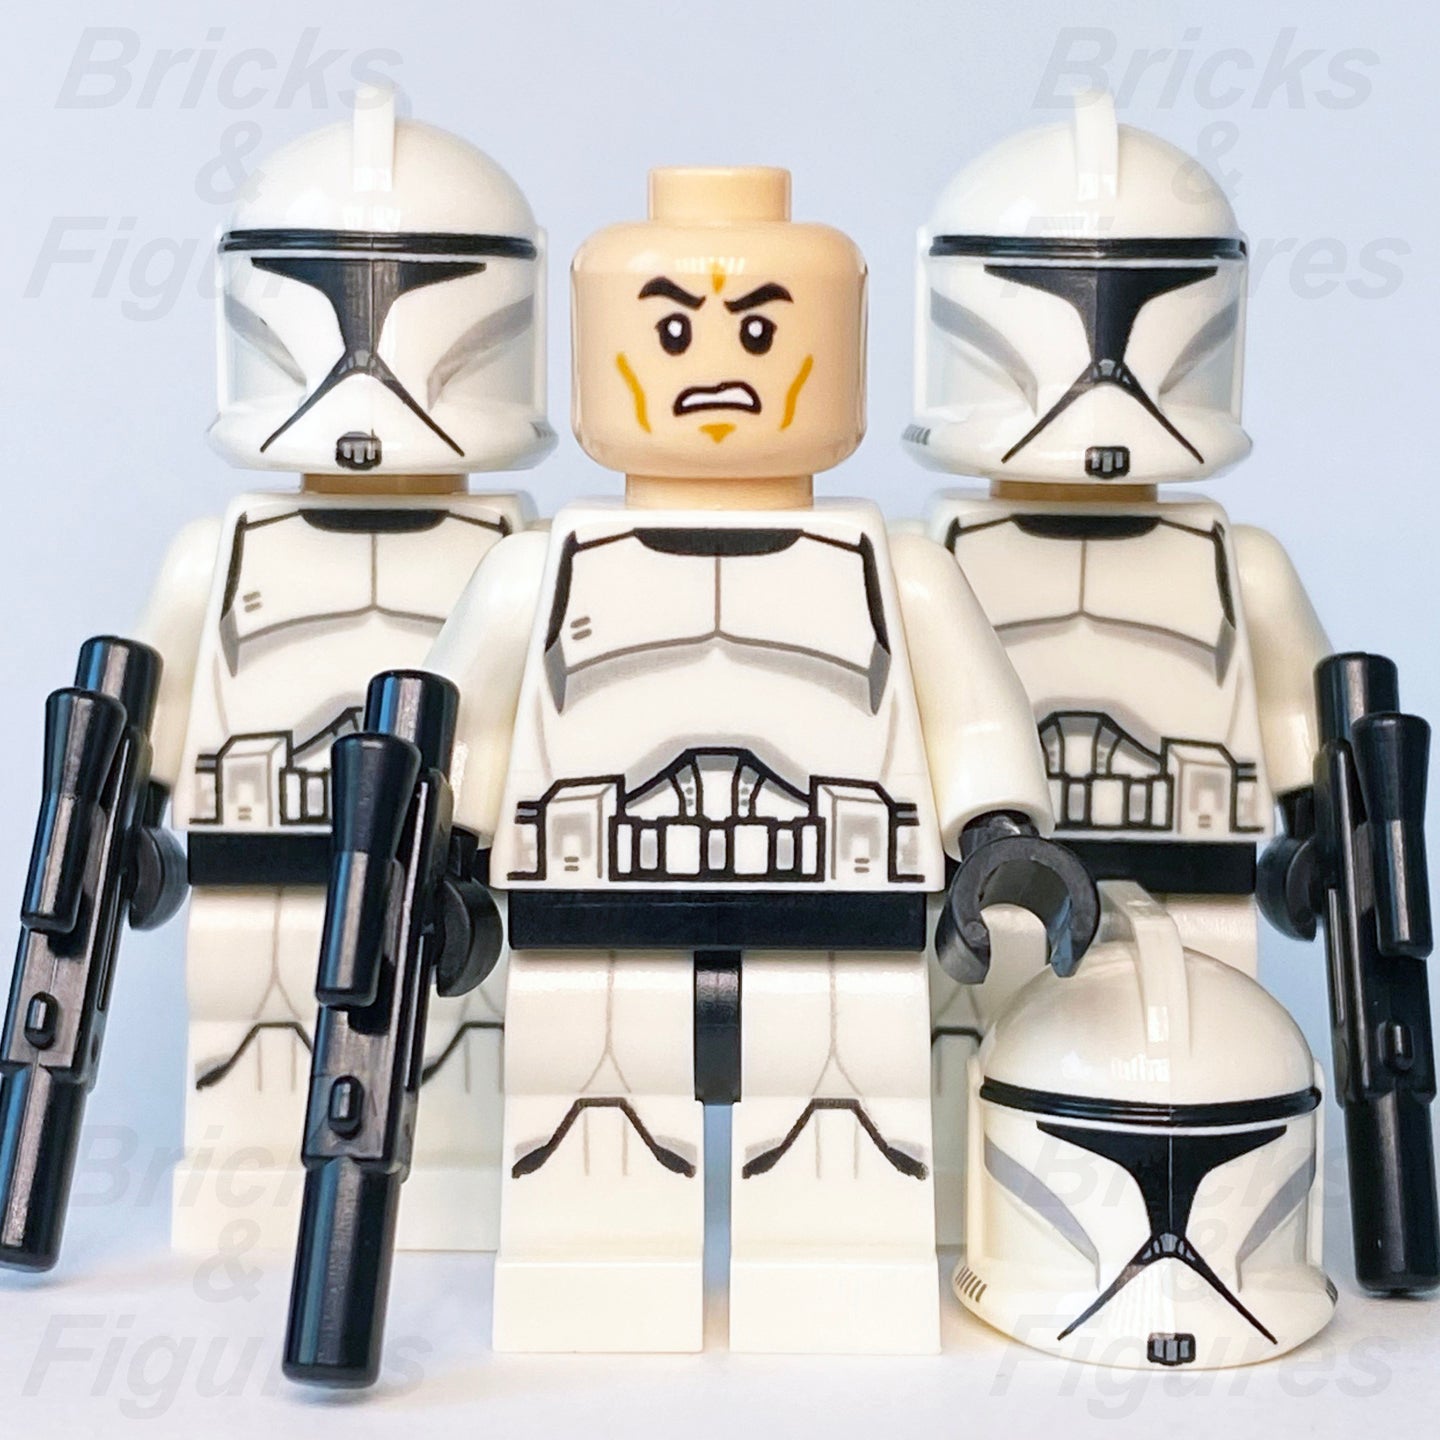 LEGO Clone Trooper Minifigures, Buy Online